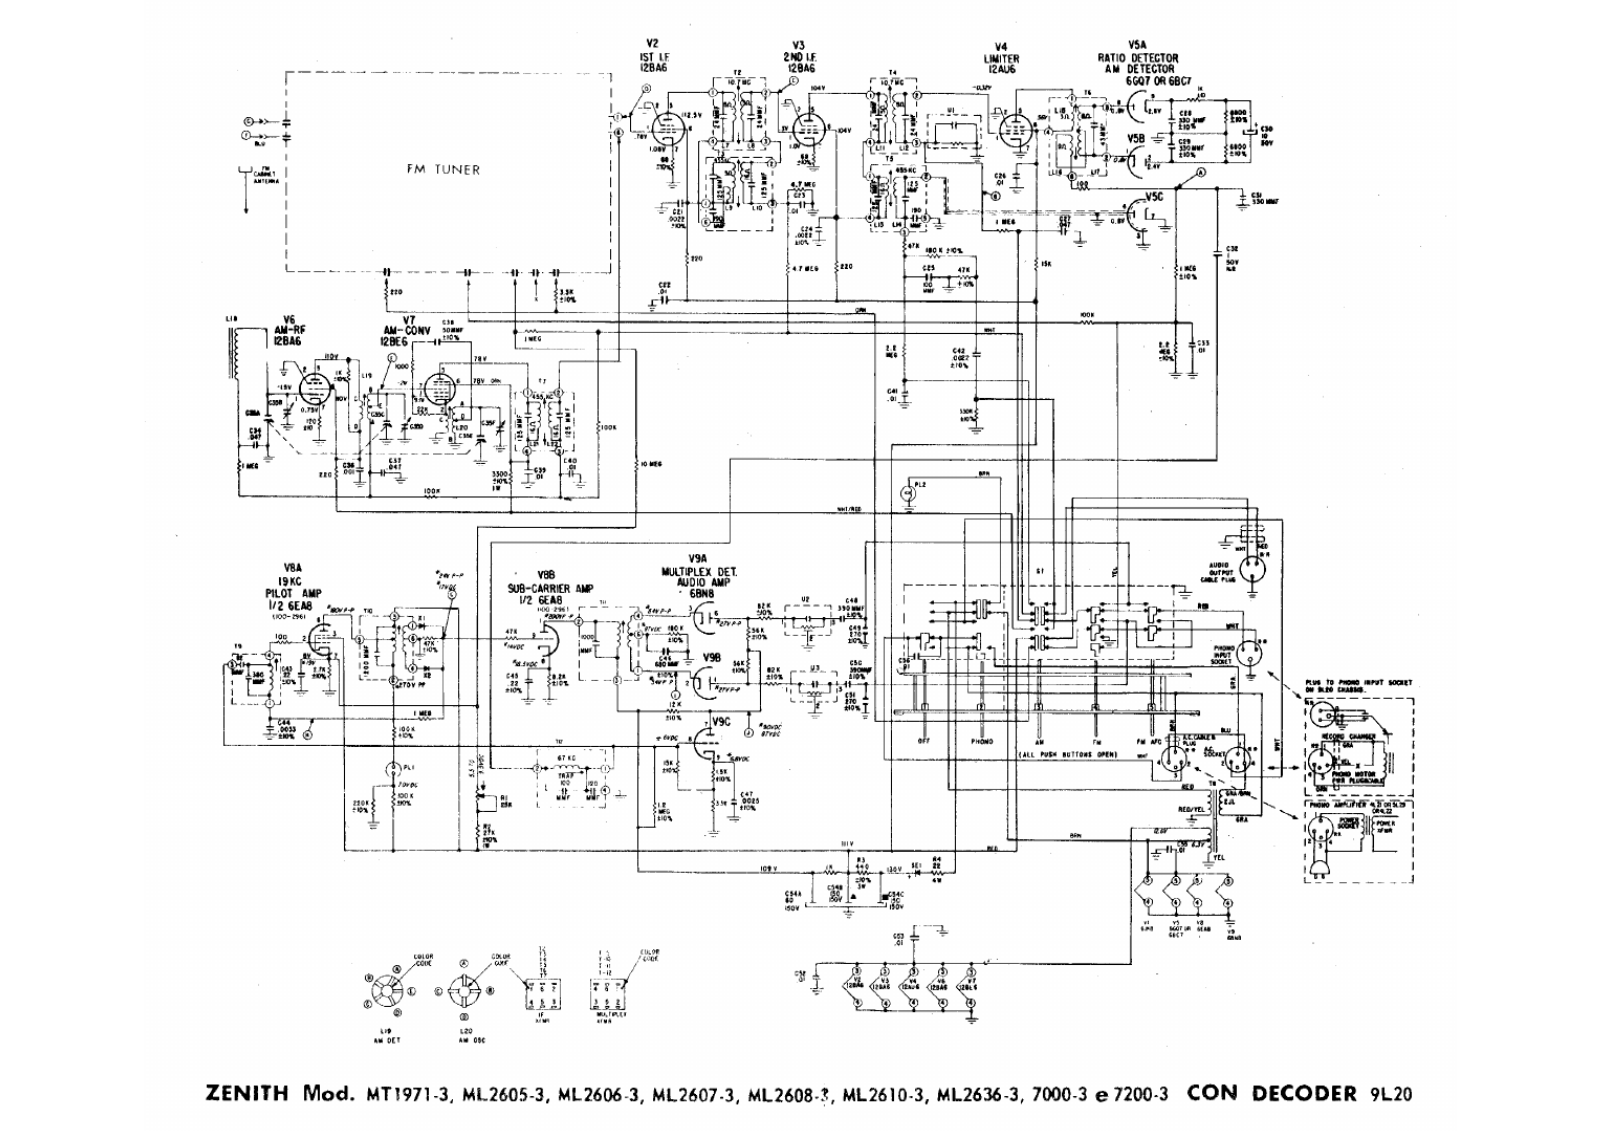 Zenith mt1971, ml2605, ml2606, ml 2608, ml2610 schematic